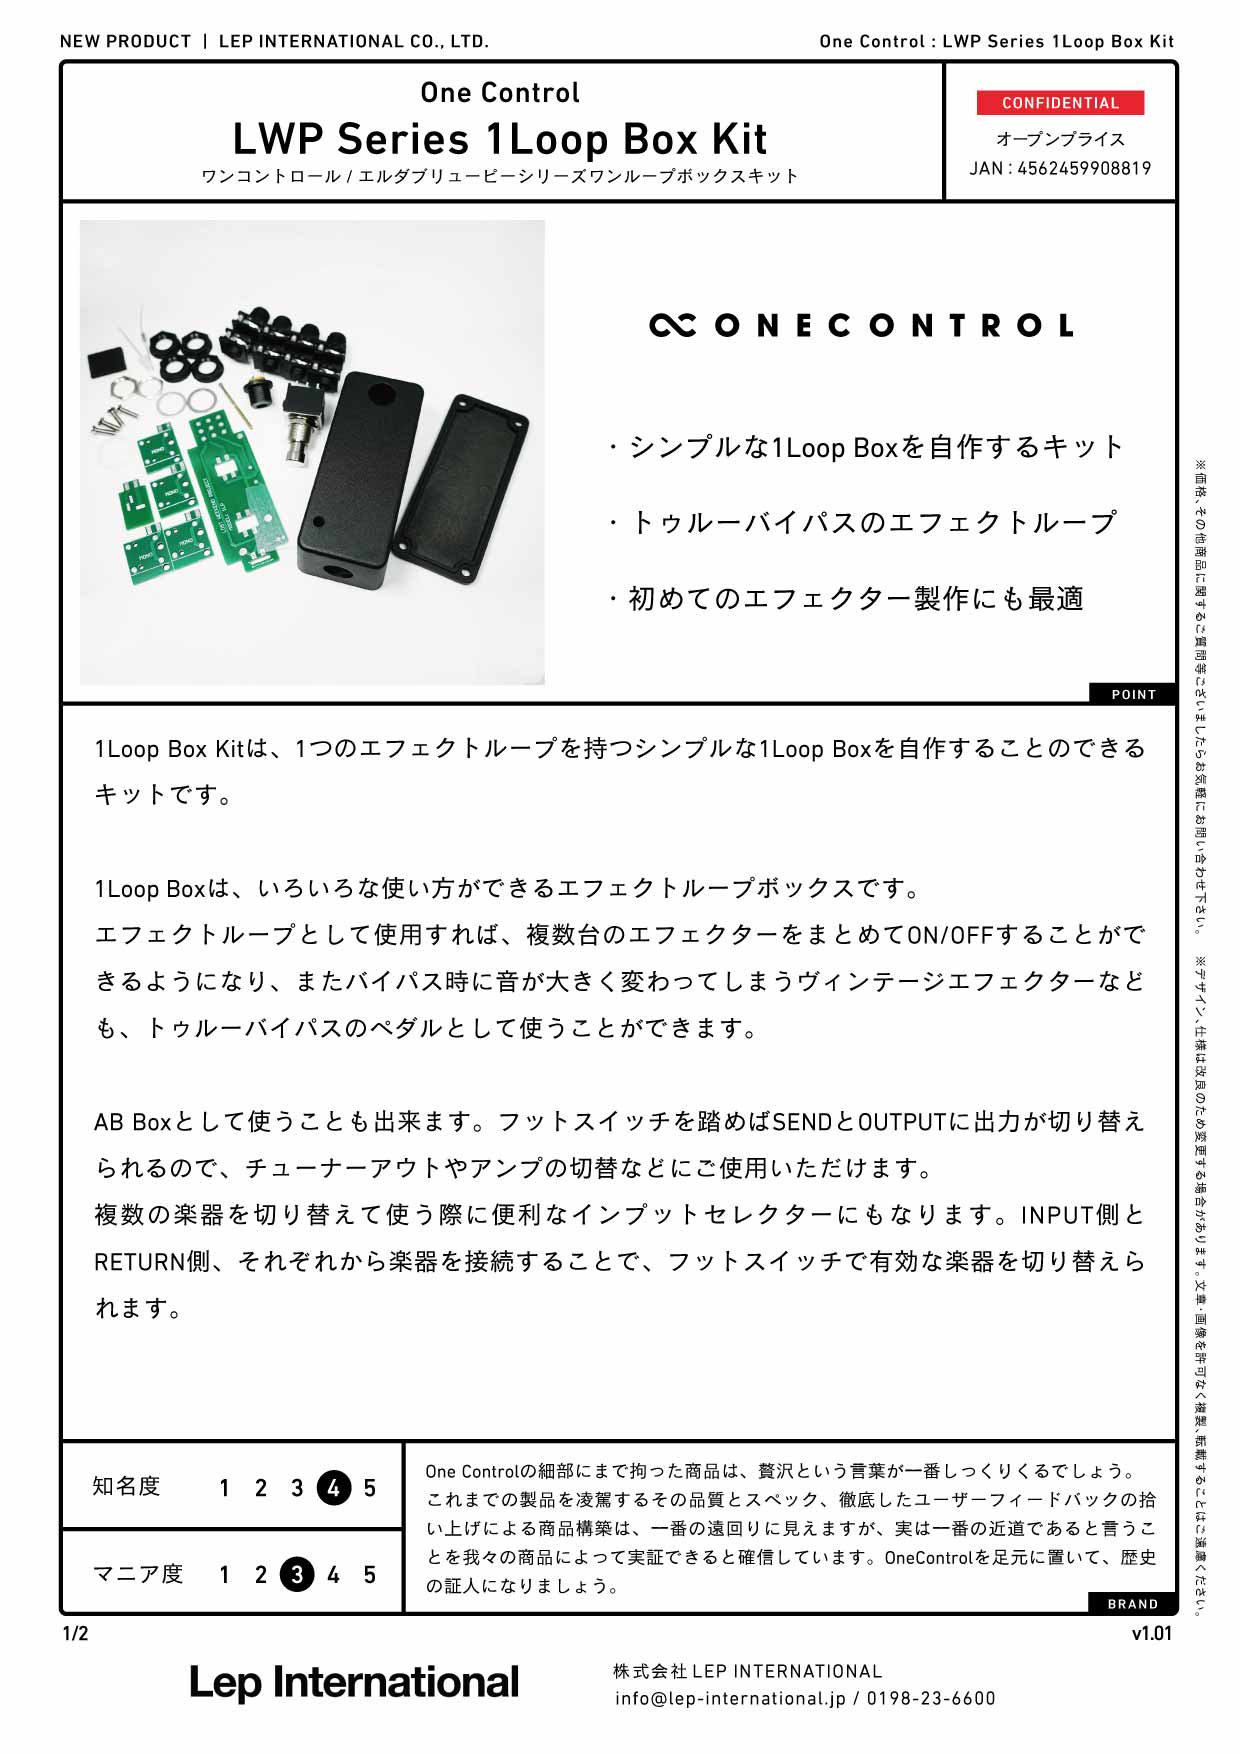 One Control / LWP Series 1Loop Box Kit